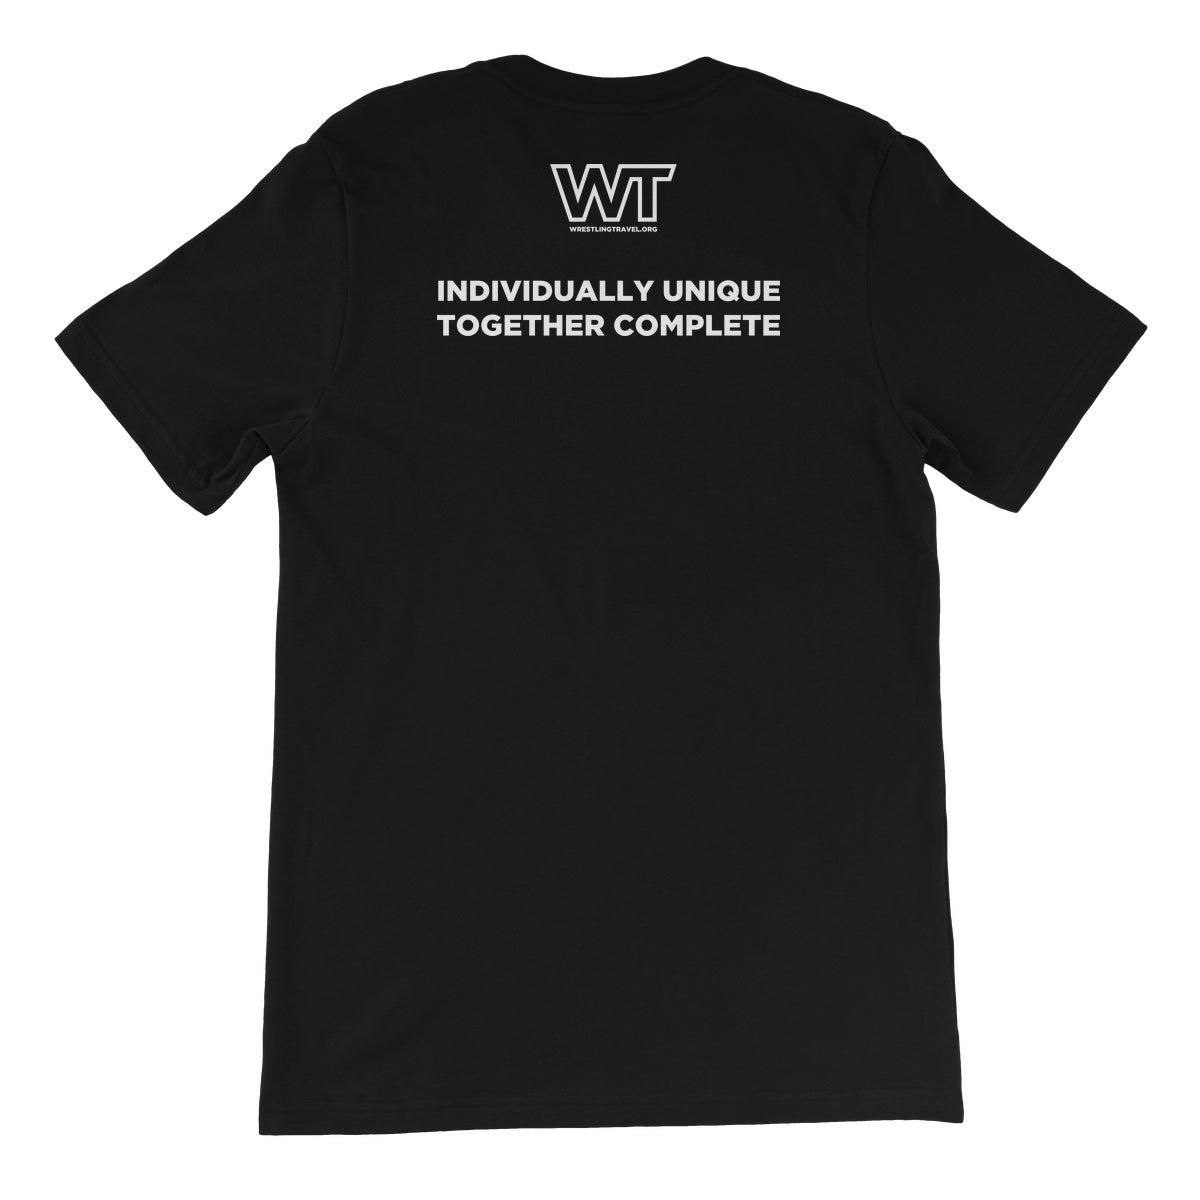 Wrestling Travel Fraternity Unisex Short Sleeve T-Shirt